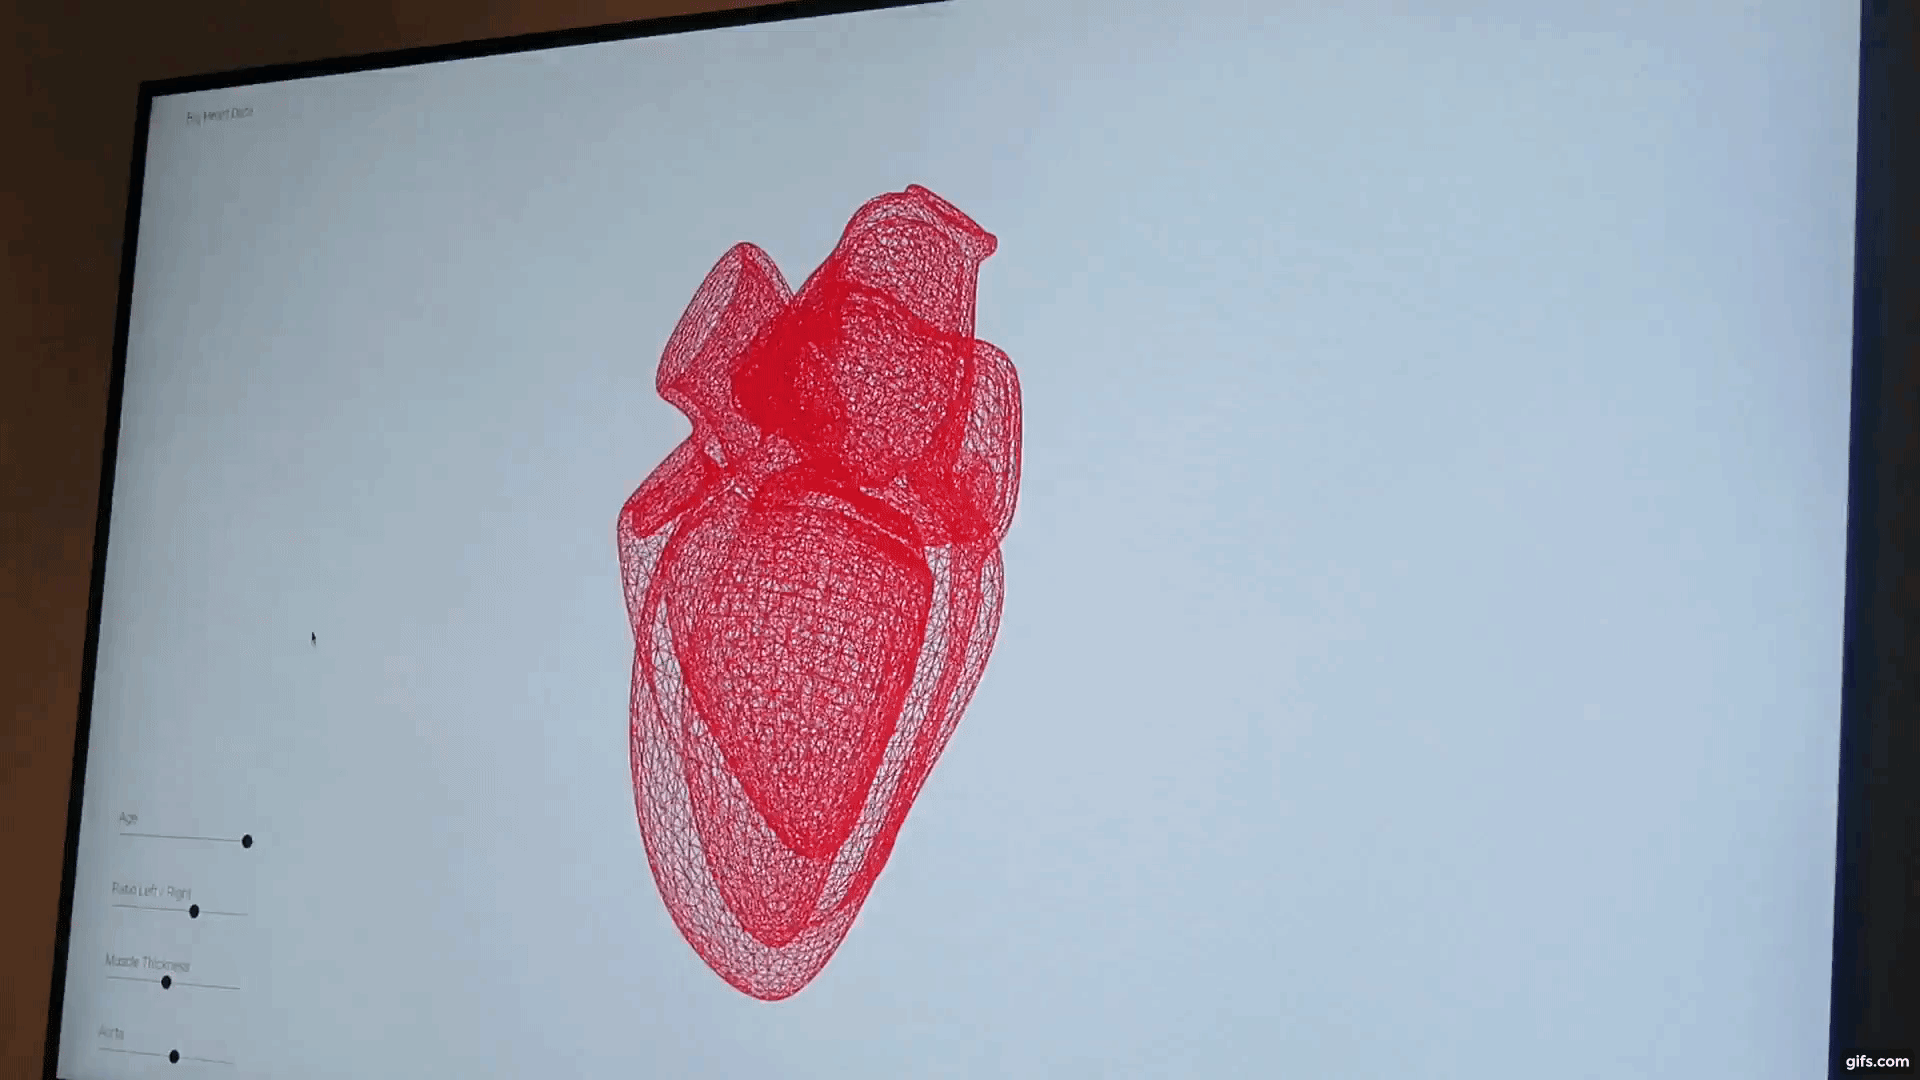 The Big Heart Data system. Clip via Tia Vialva.